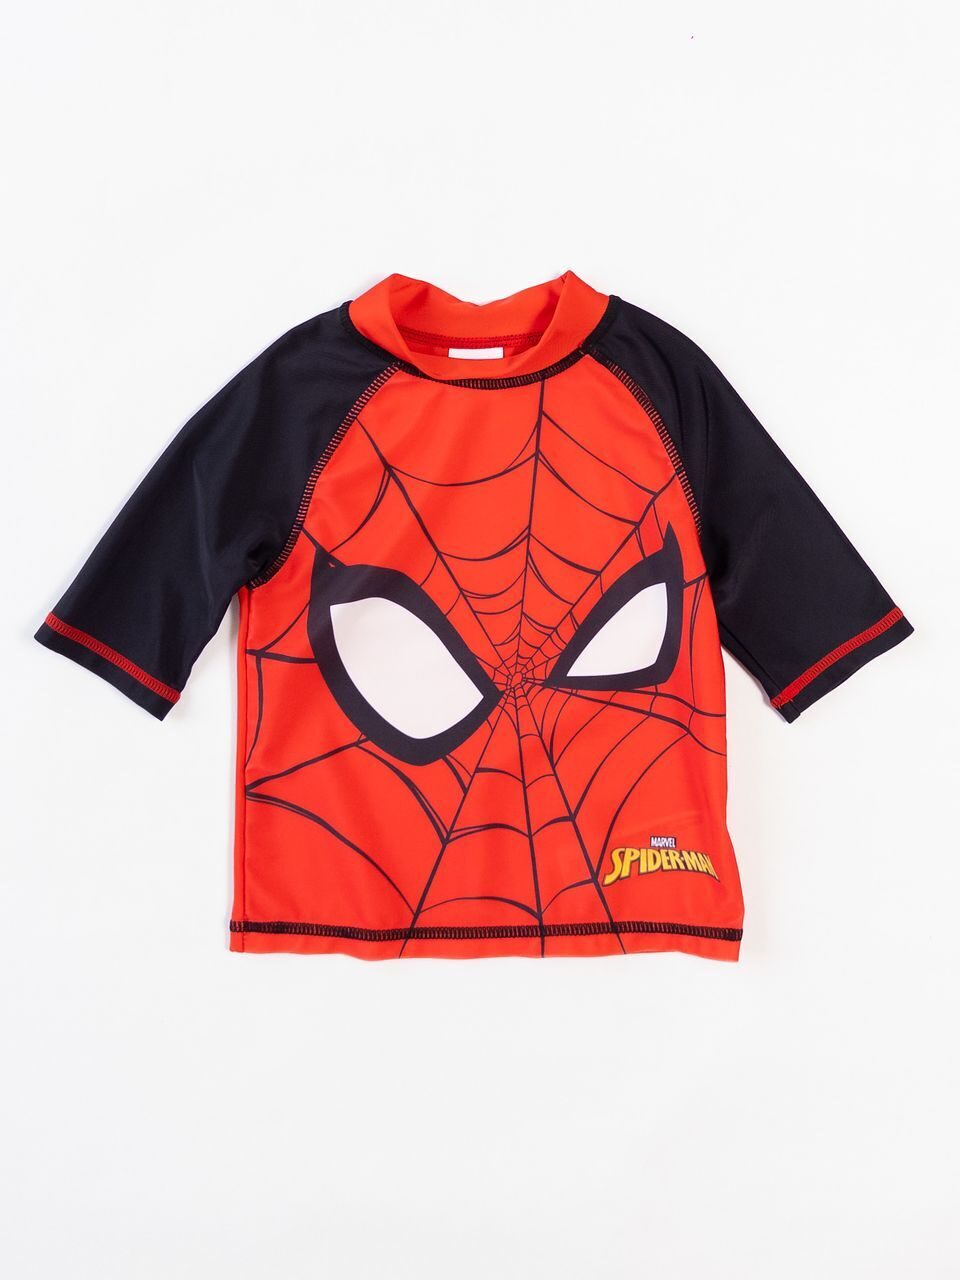 Майка купальная для мальчика цвет красный/черный принт Spiderman на рост 104 см 3-4 года Primark